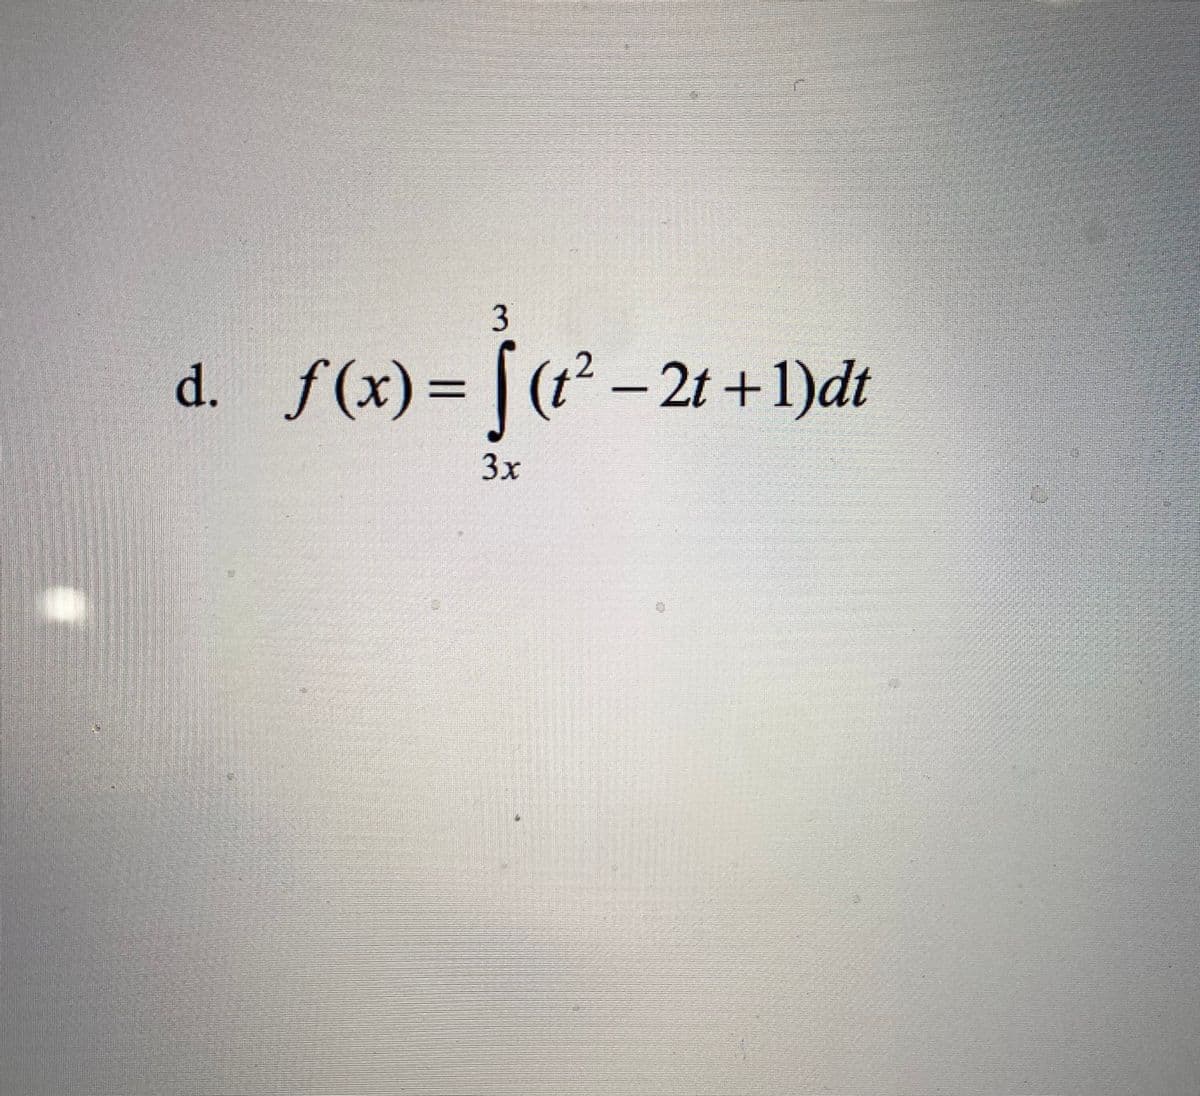 3
d. f(x)= |
(t²-2t+1)dt
3x
